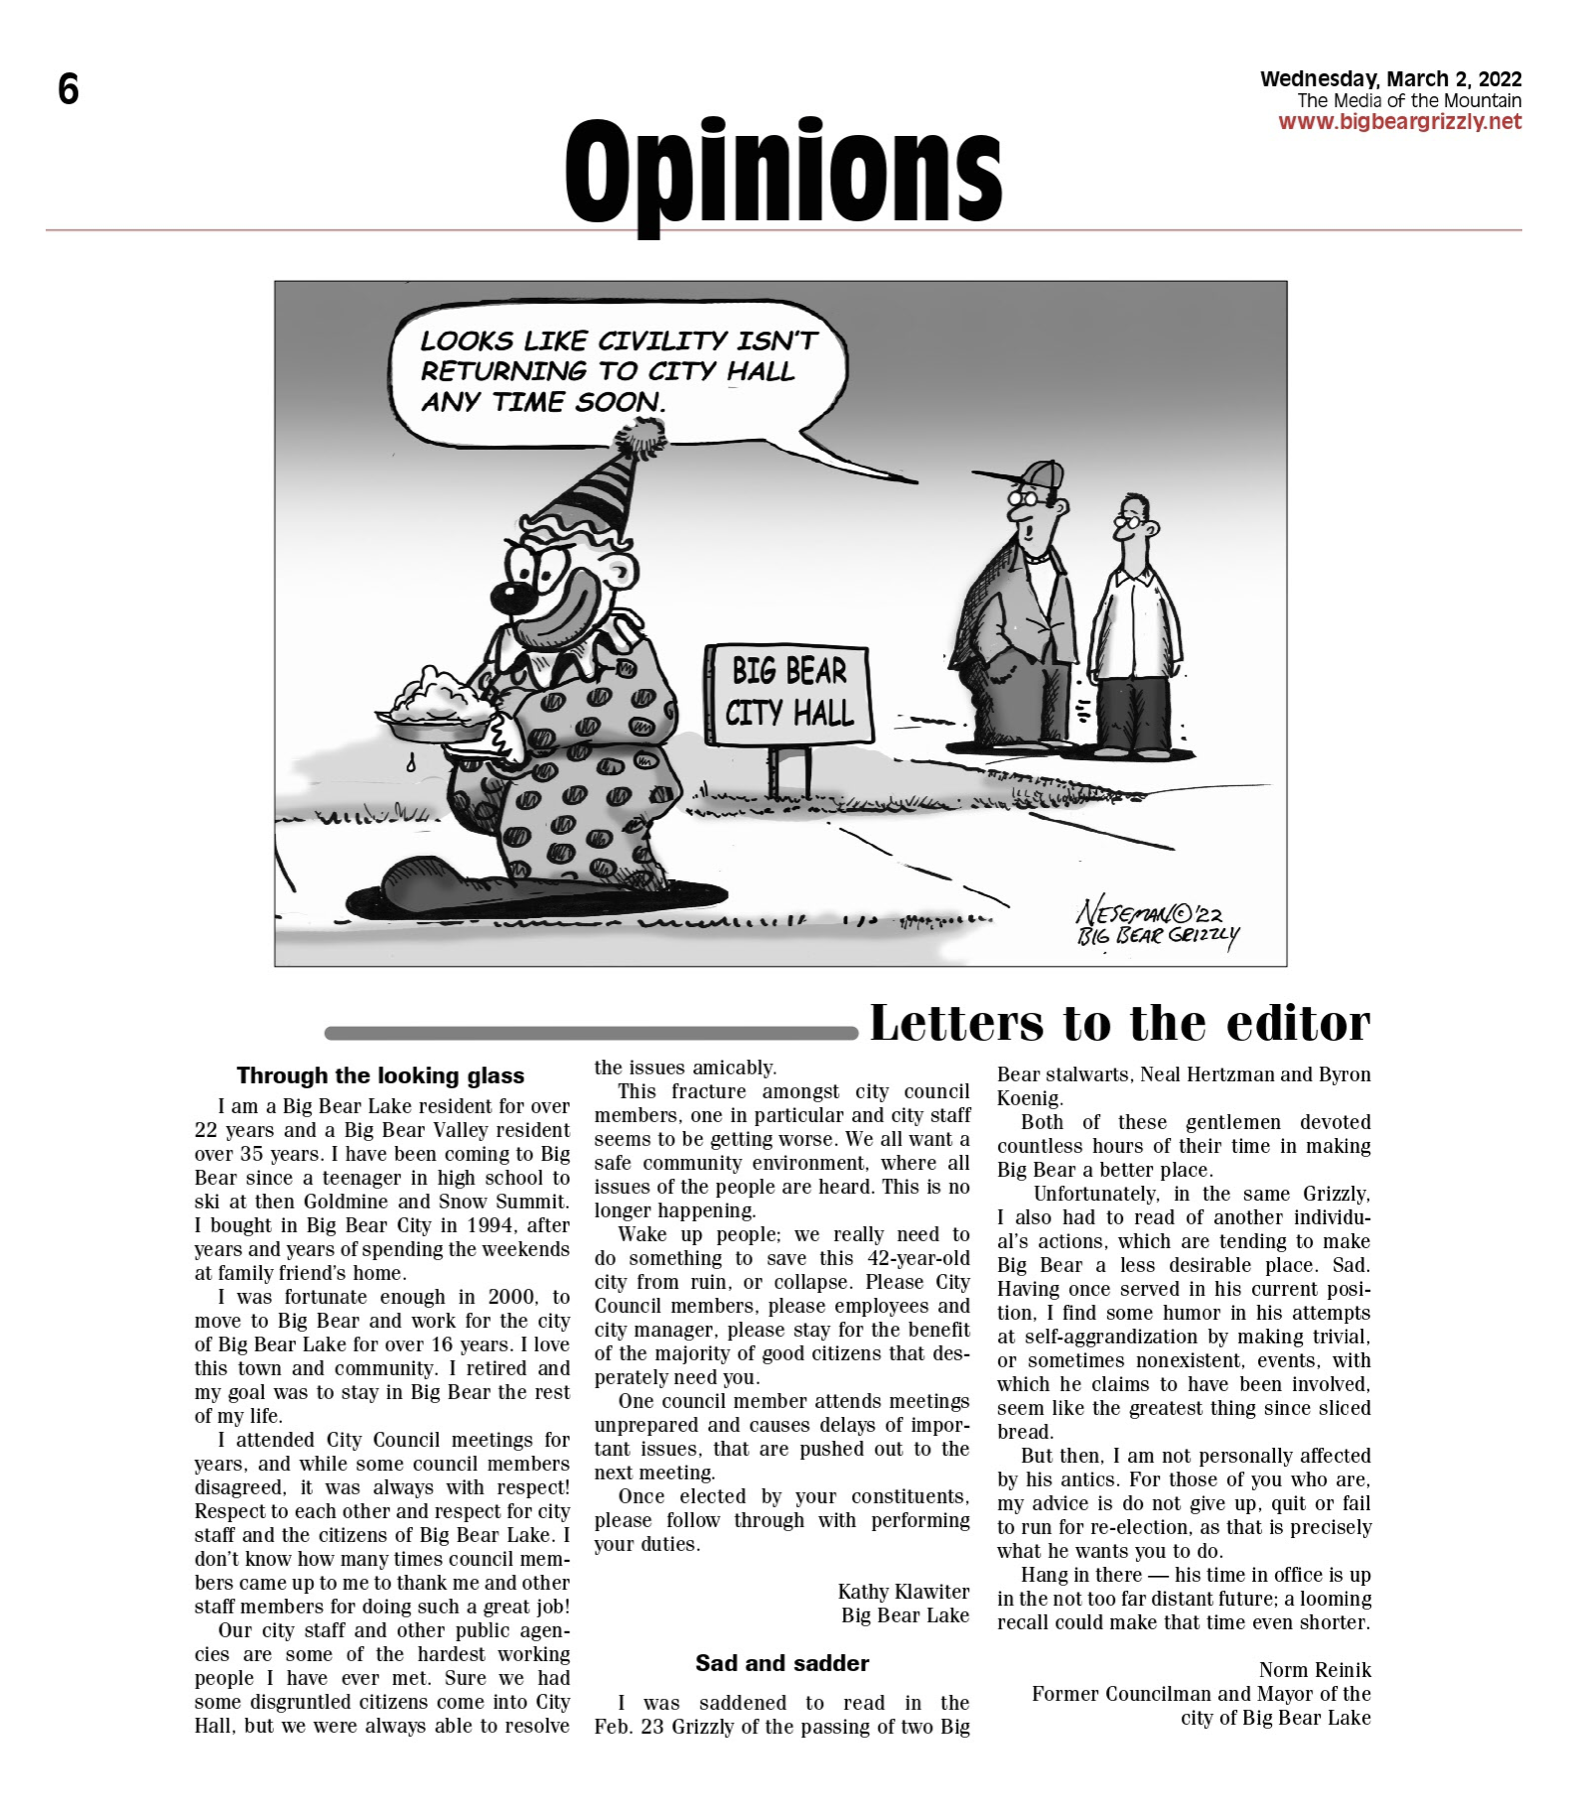 NEWS: Lee in Cartoon, Klawiter & Reinik Editorials – Why RECALL Alan Lee?